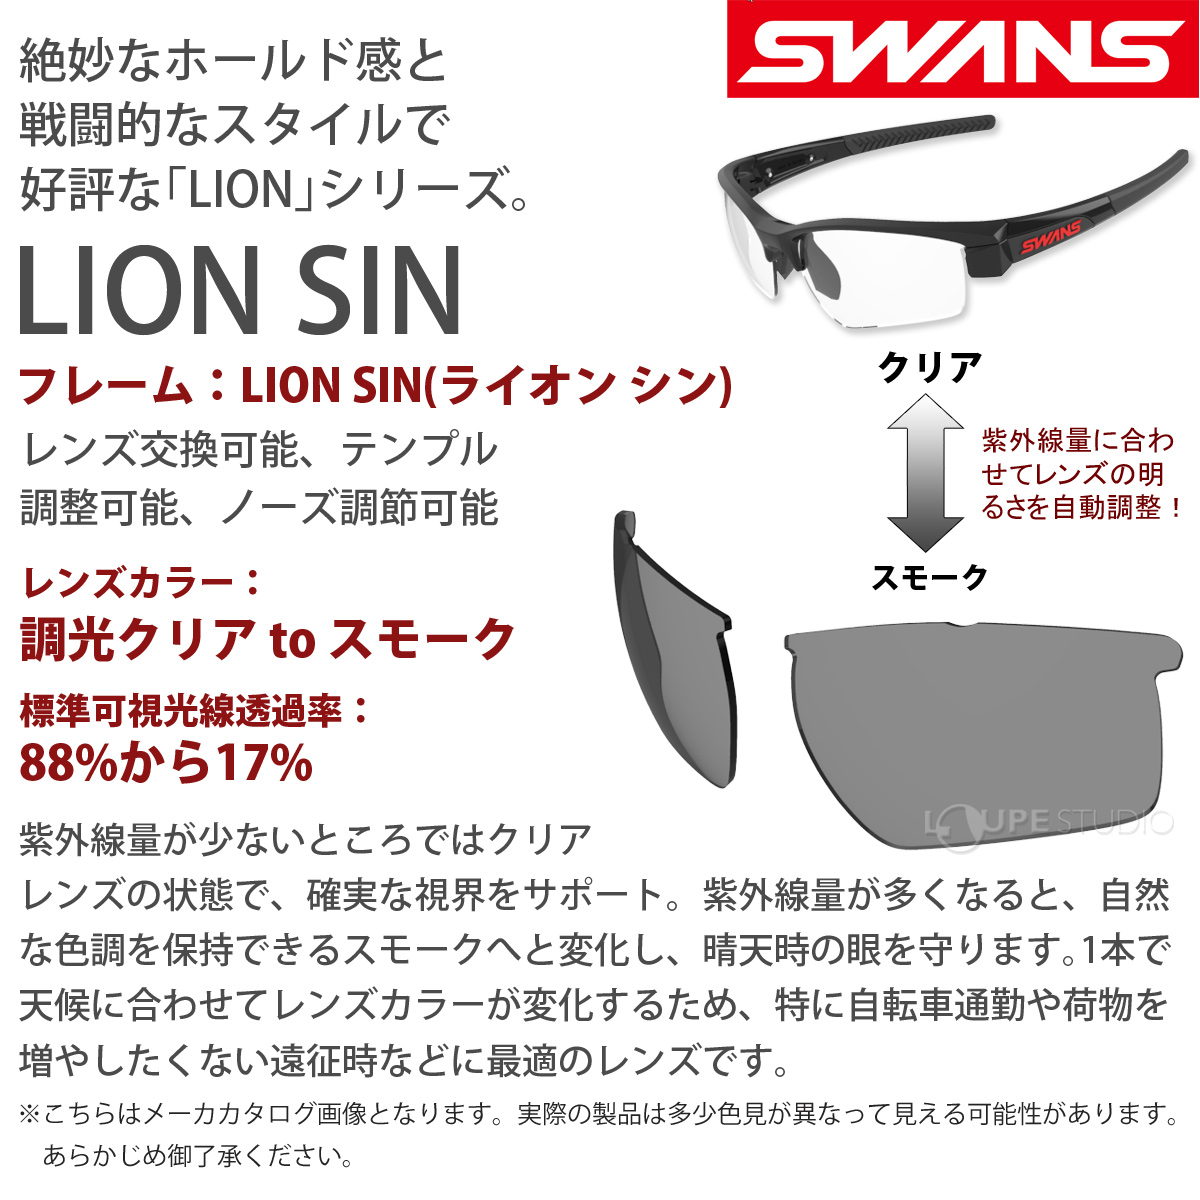 【色: 0001 BK】SWANS(スワンズ) スポーツサングラス ライオンシン